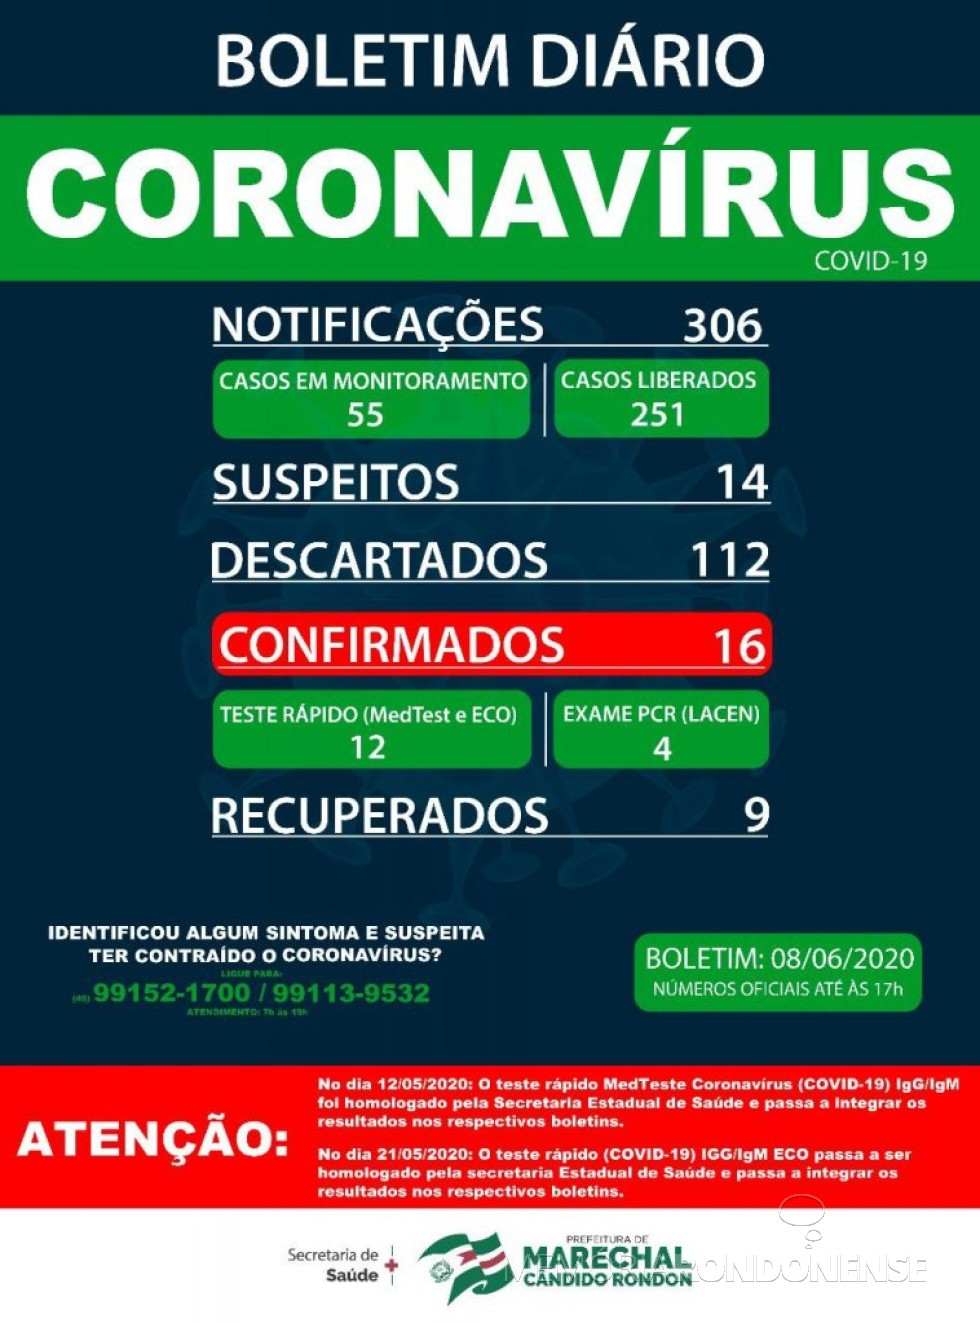 Boletim da Secretaria de Saúde de Marechal Cândido Rondon apontando que o município tem 16 casos testados positivados para o COVID 19.
Imagem: Acervo Imprensa PM-MCR - FOTO 15 -
